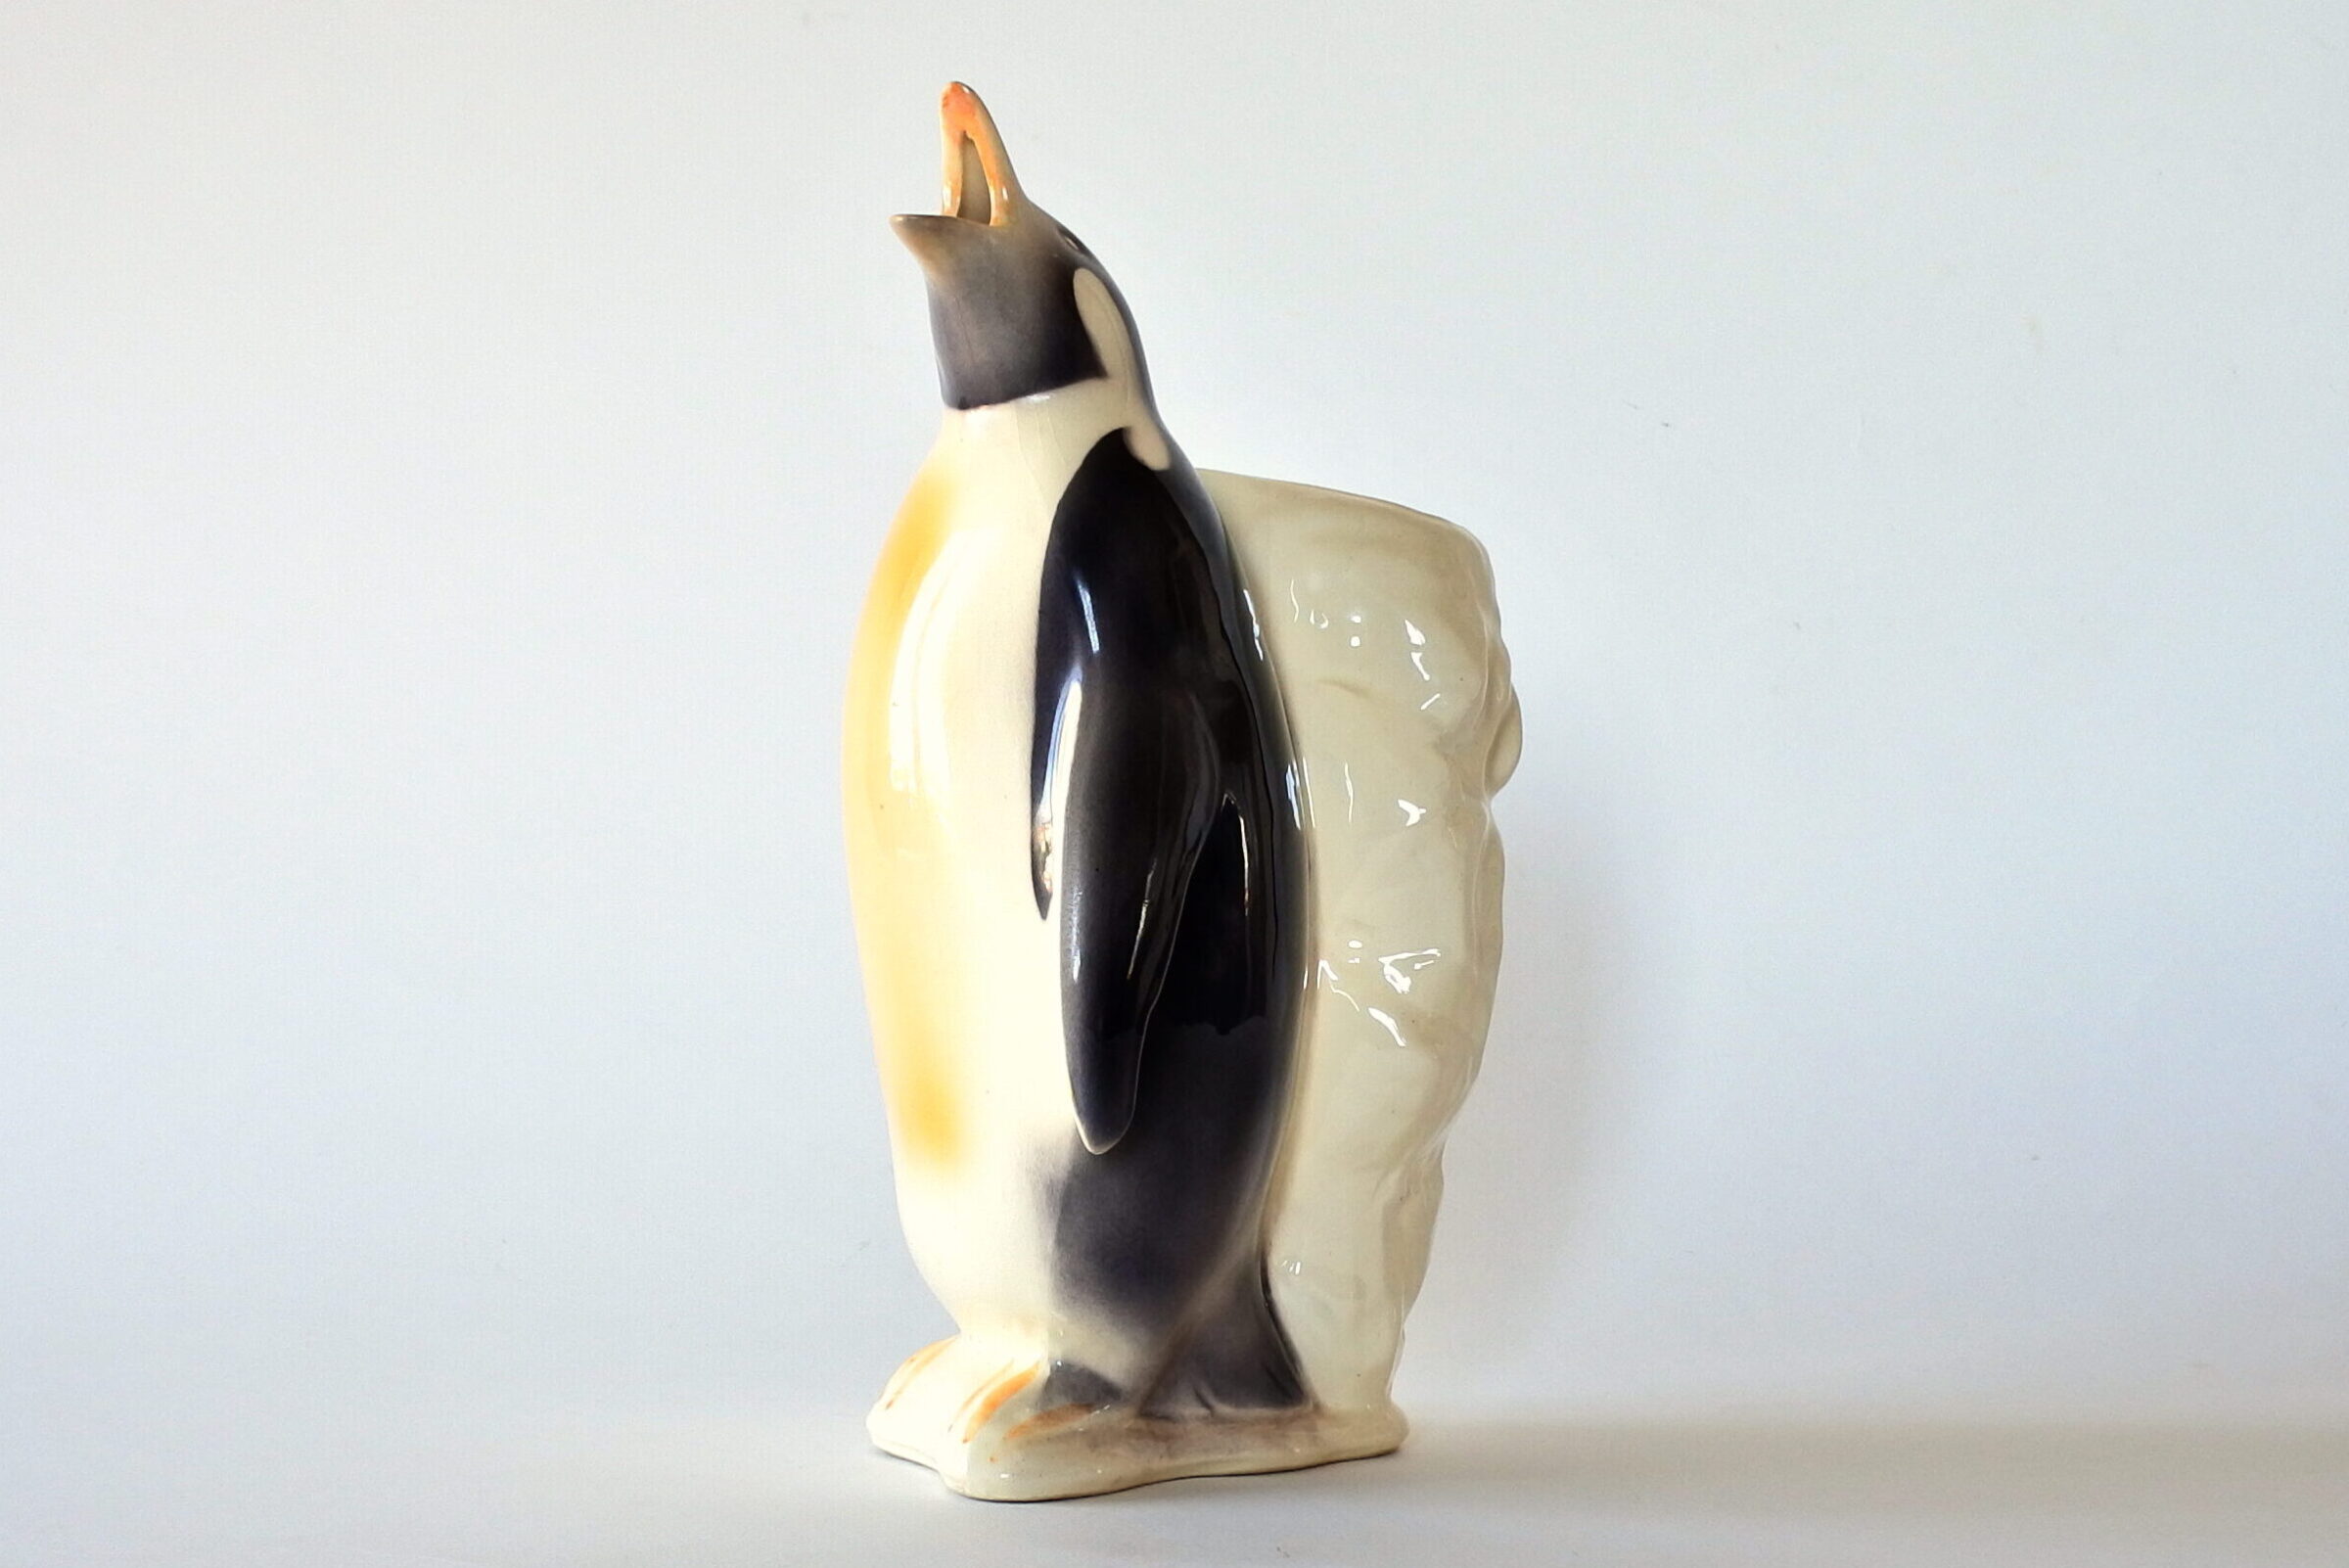 Brocca in ceramica barbotine a forma di pinguino con iceberg